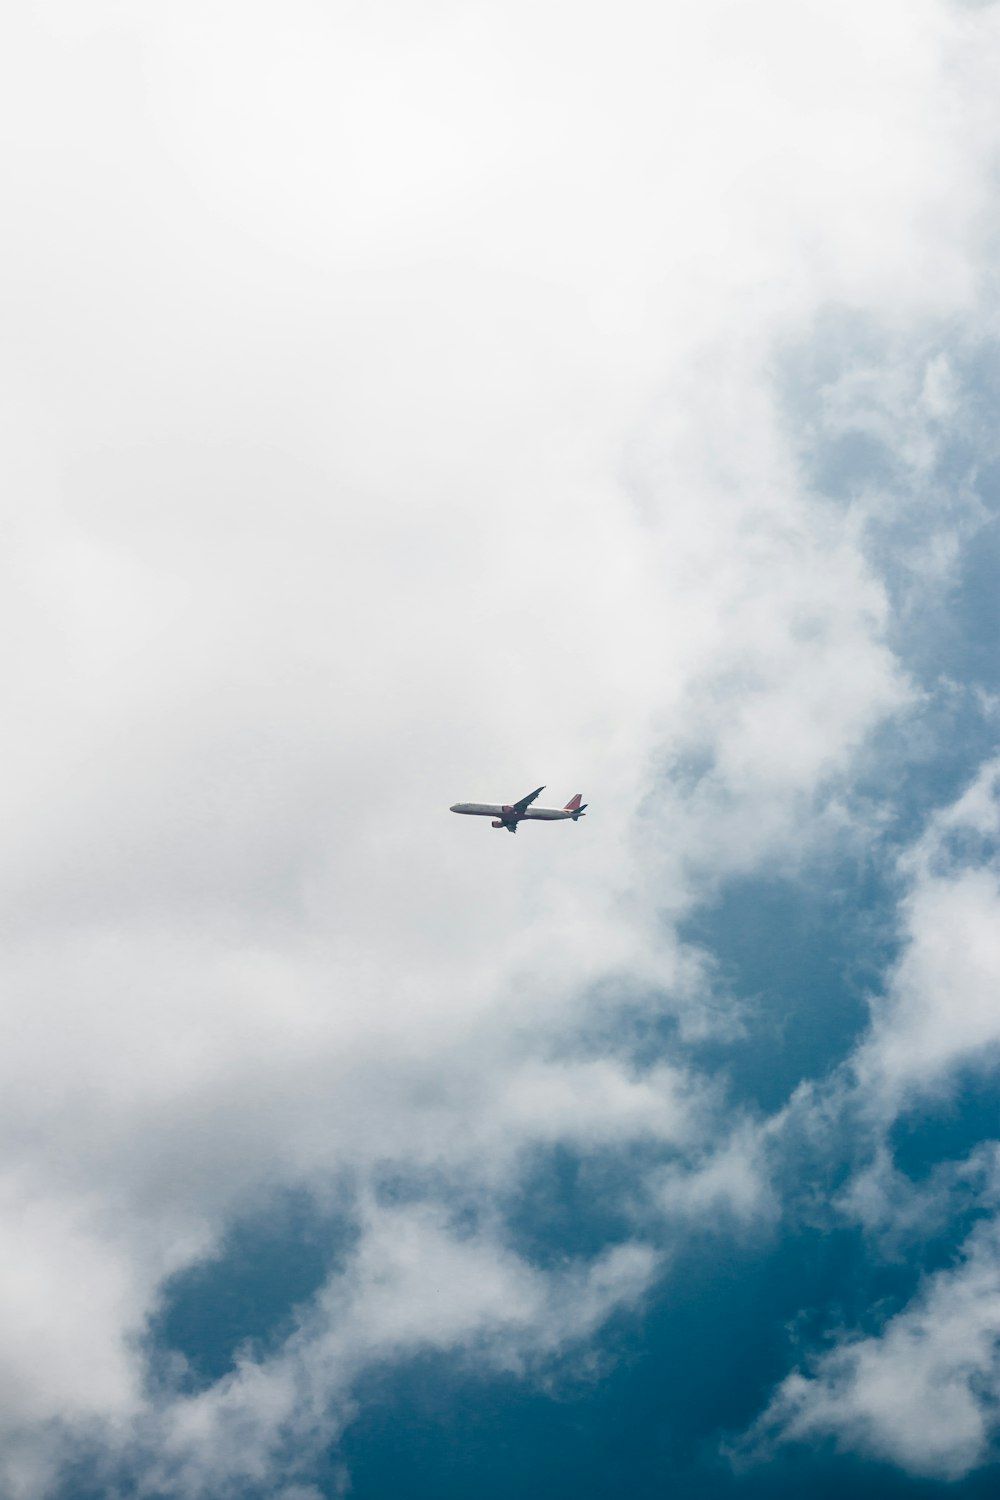  Flugzeug Hintergrundbild 1000x1500. Foto zum Thema Ein Flugzeug, das durch einen bewölkten blauen Himmel fliegt